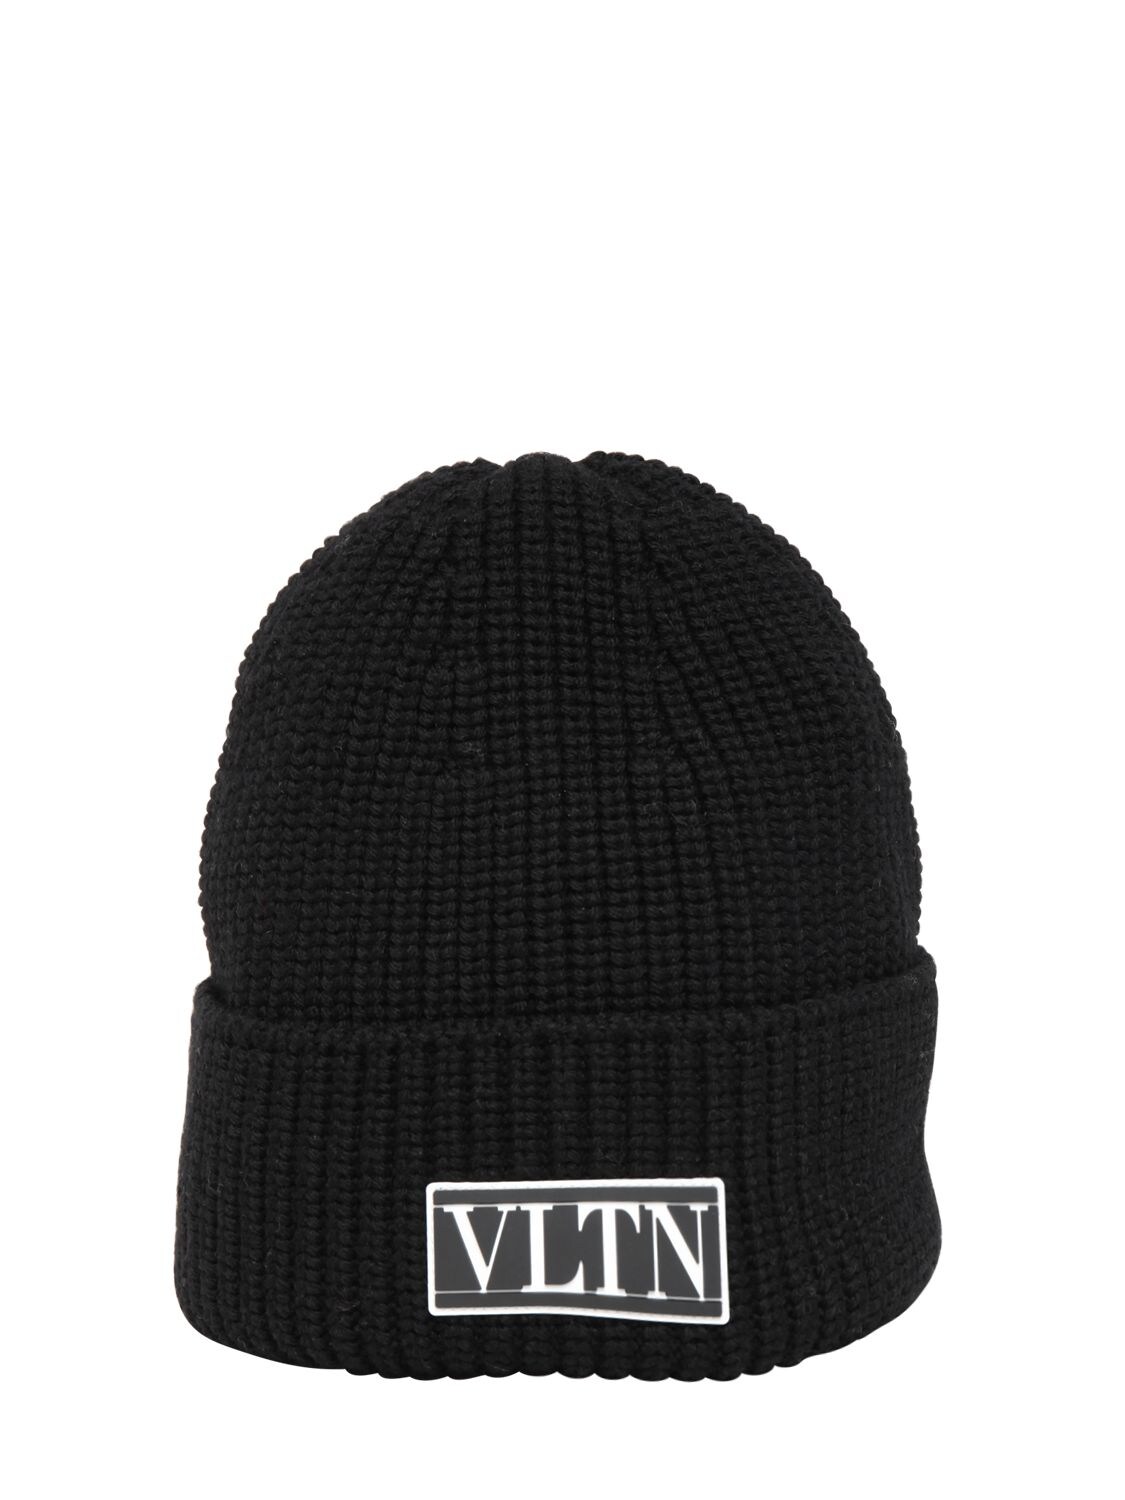 Valentino Garavani Logo Patch Wool Knit Beanie In Black